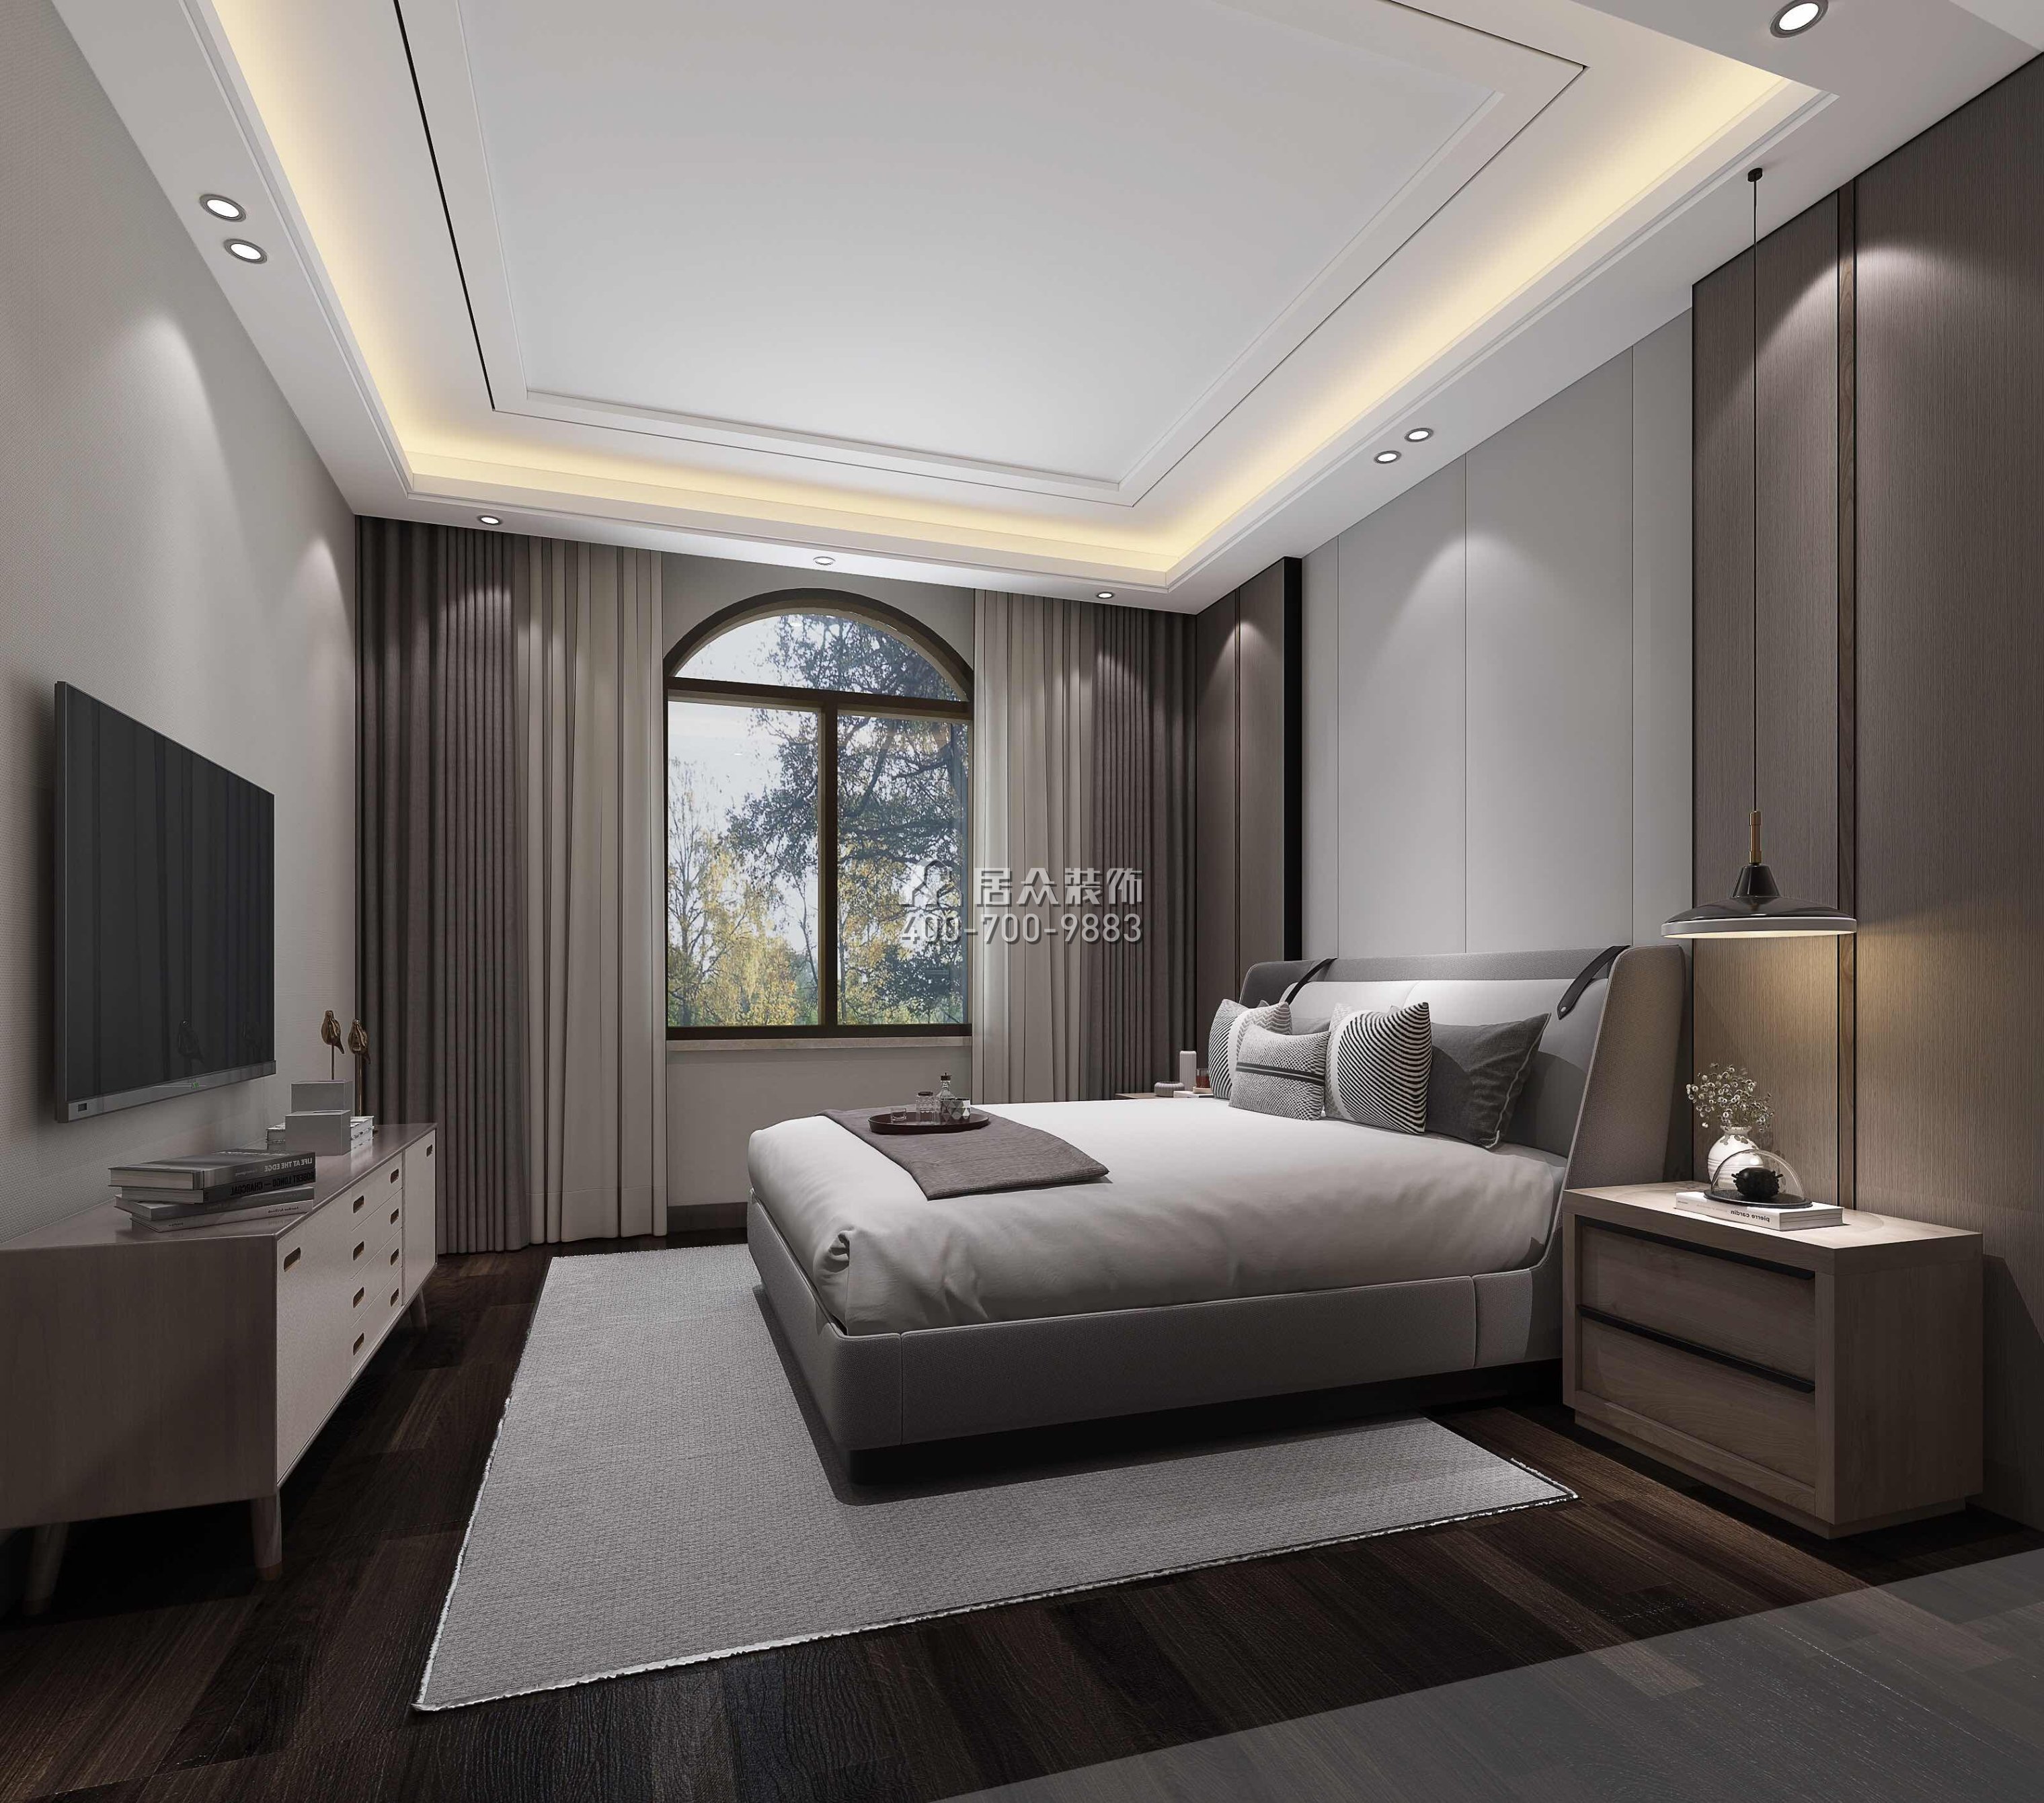 江畔豪庭800平方米现代简约风格别墅户型卧室装修效果图